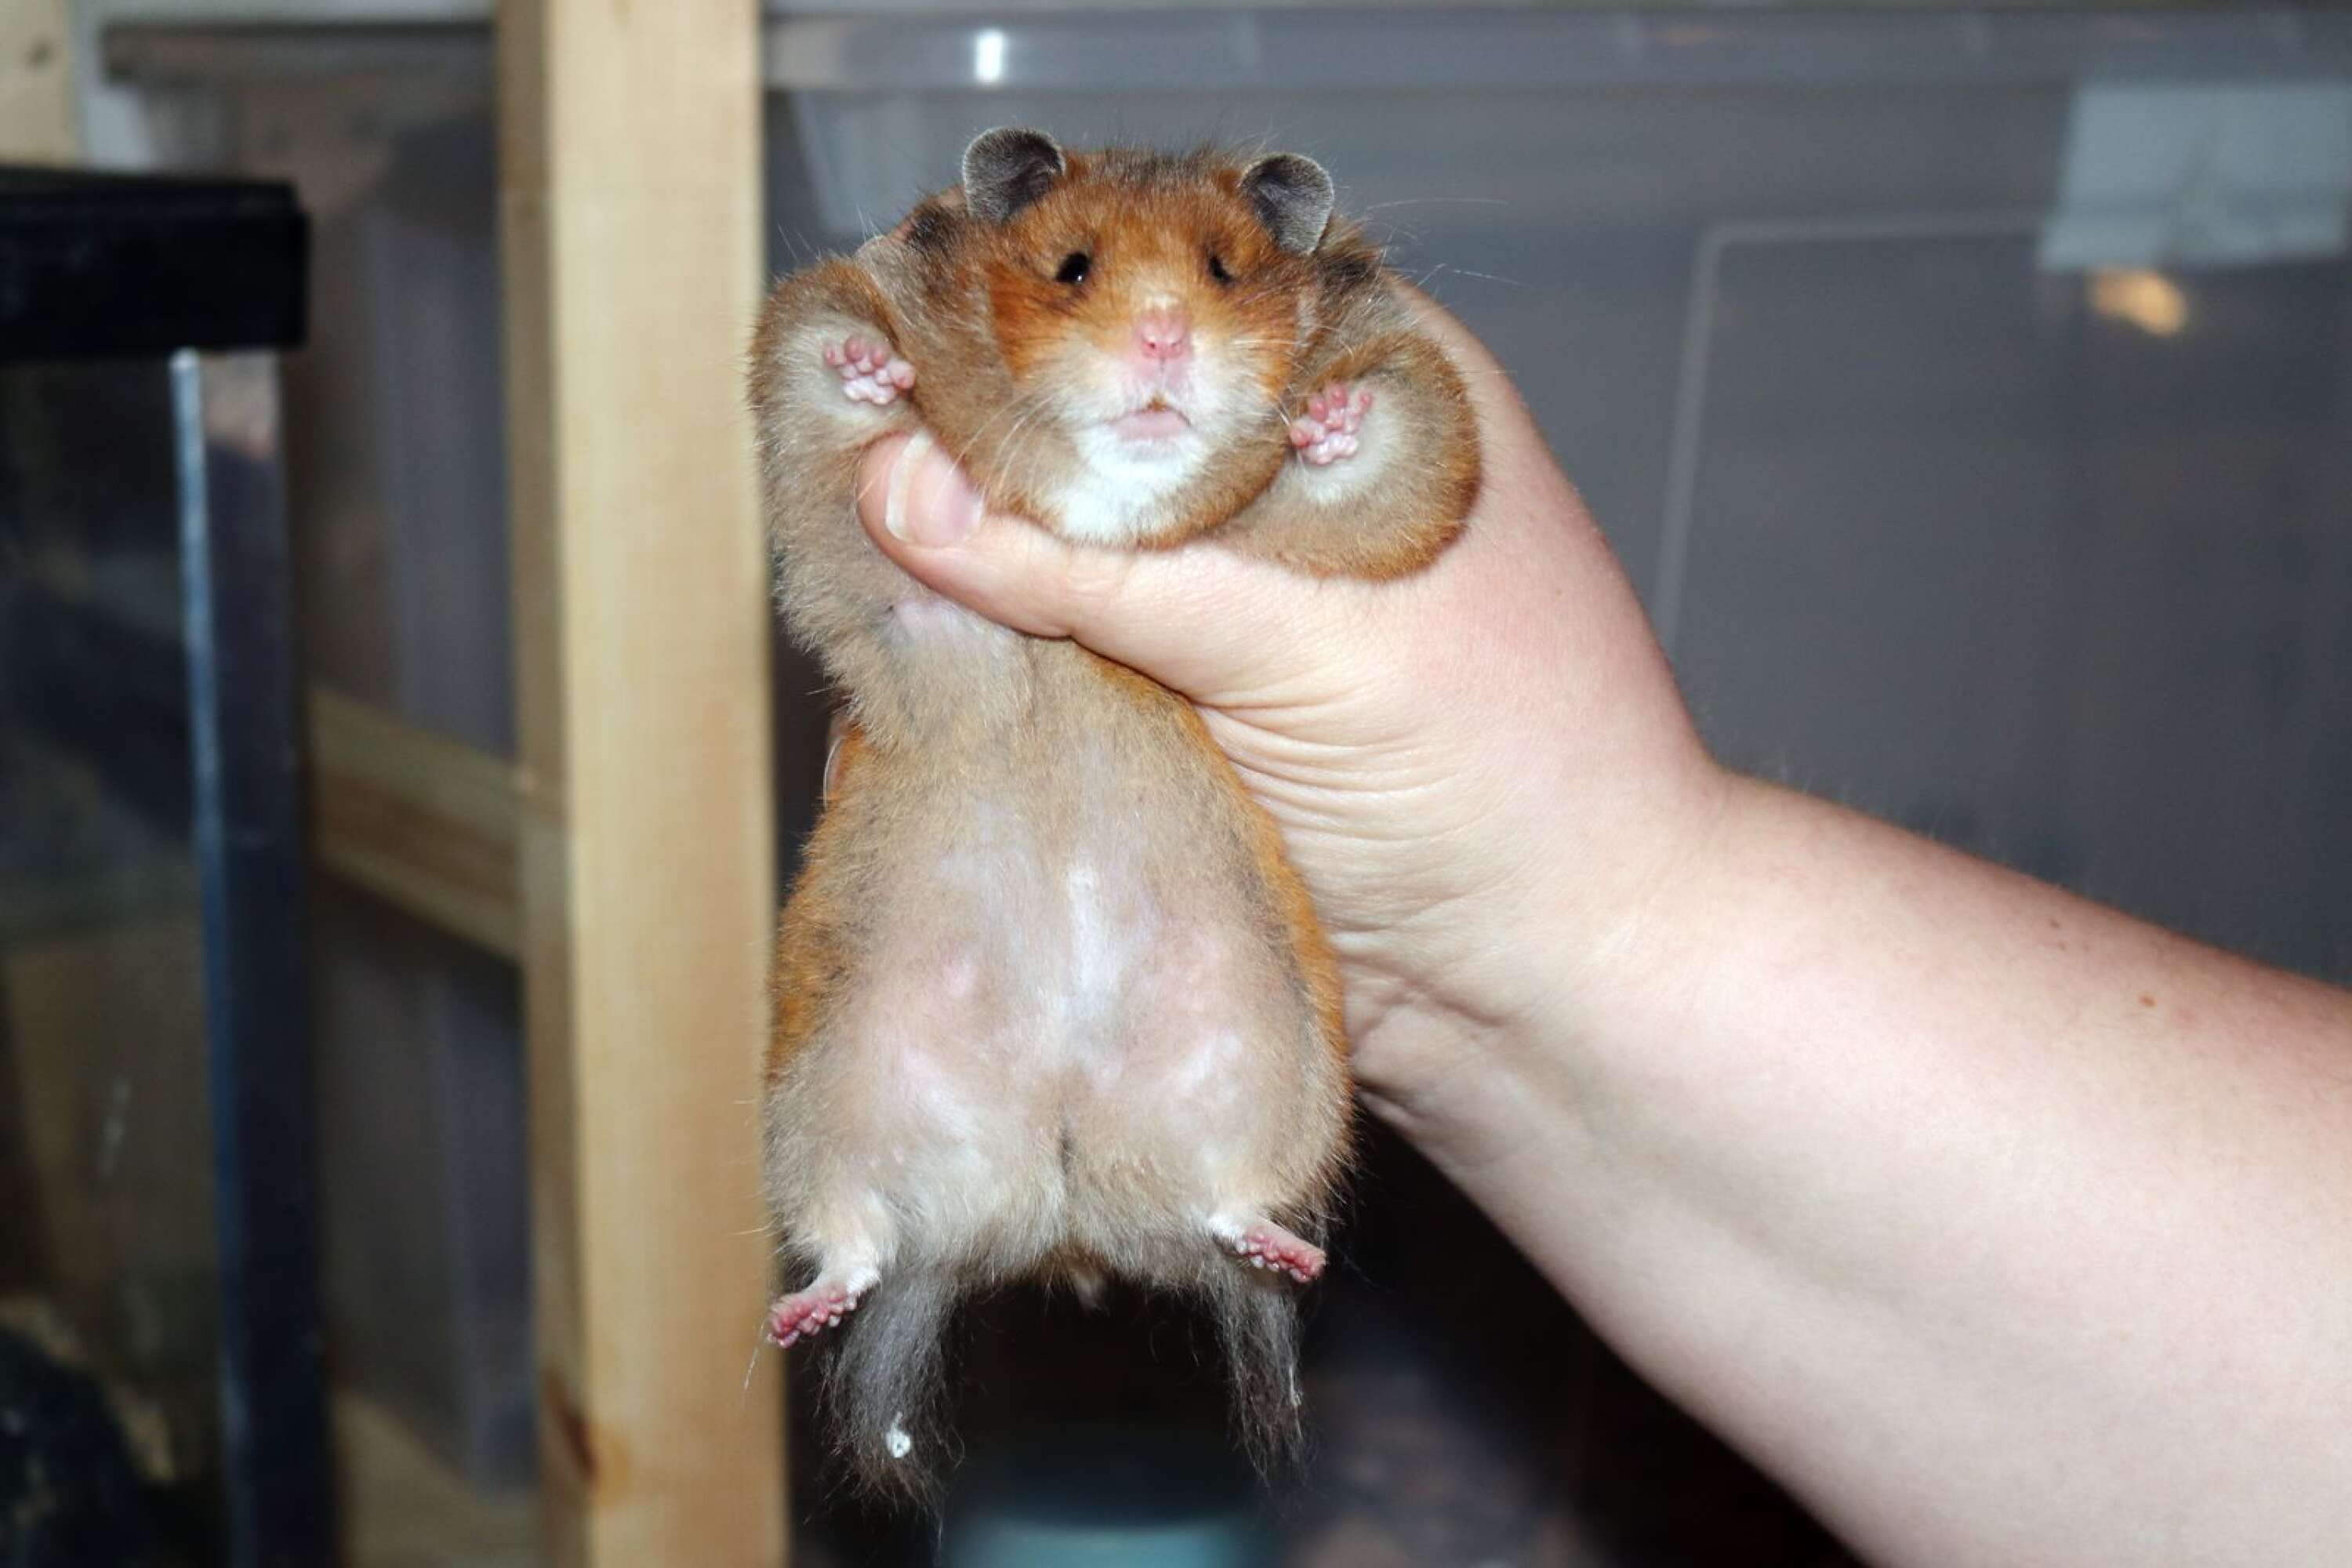 Marikas hamstrar gillar att bli pysslade med. Magen vill de helst inte att man rör, men de vill gärna bli klappade över ryggen. Så som hon håller på bilden brukar domarna ta när de ska bedöma en hamster på en utställning.